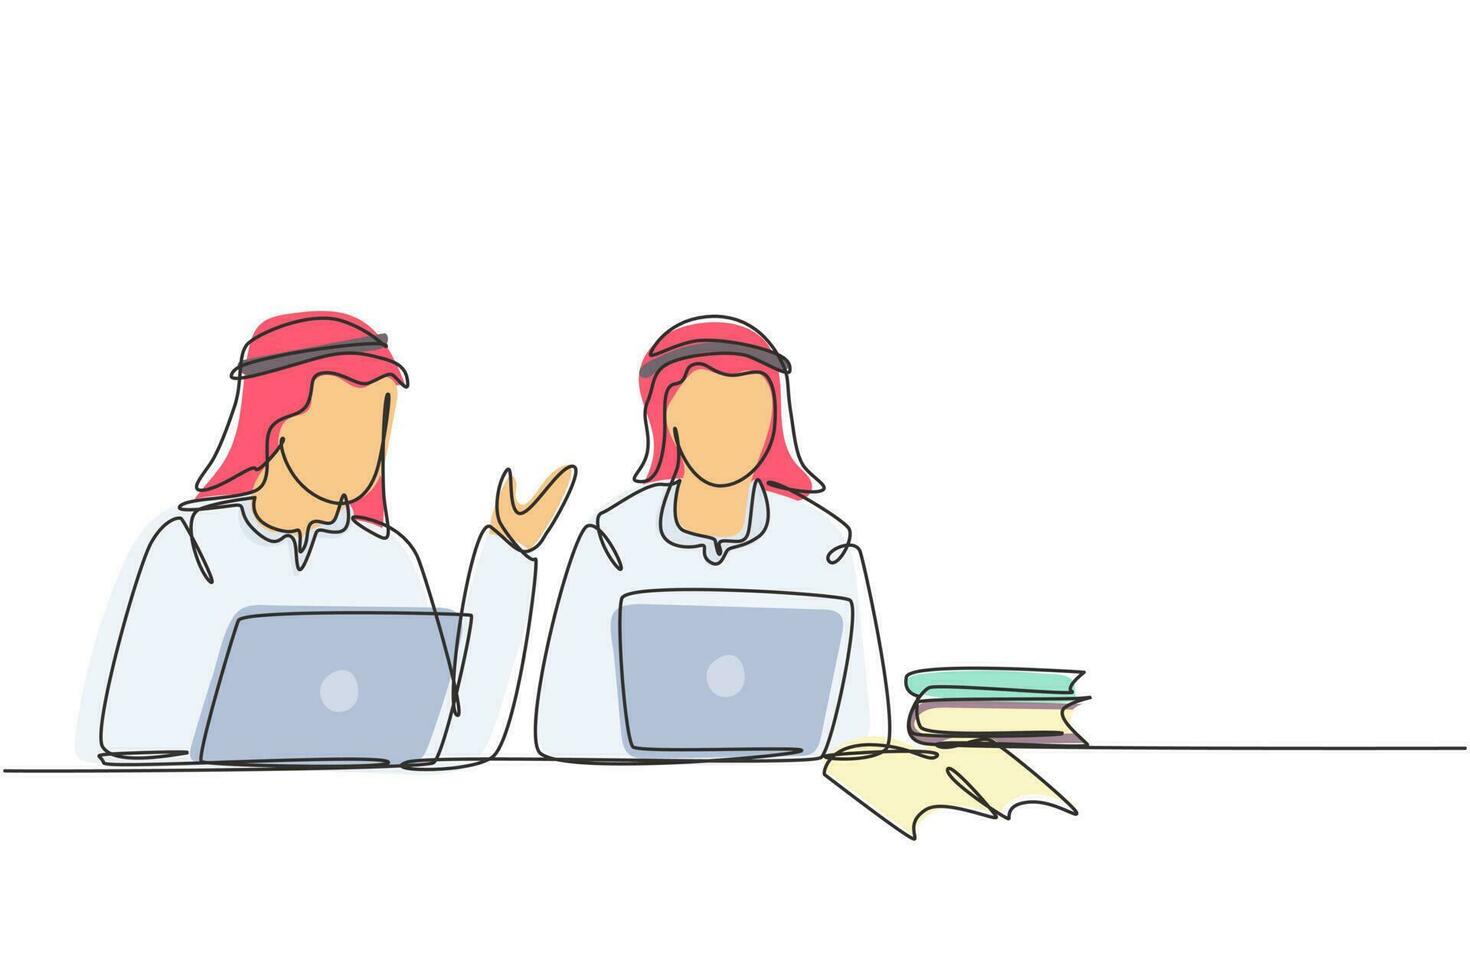 kontinuerlig en rad ritning två unga arabiska man studerar med laptop och hög med böcker. tillbaka till skolan, smarta studenter, online utbildning koncept. enda rad rita design vektorgrafisk illustration vektor